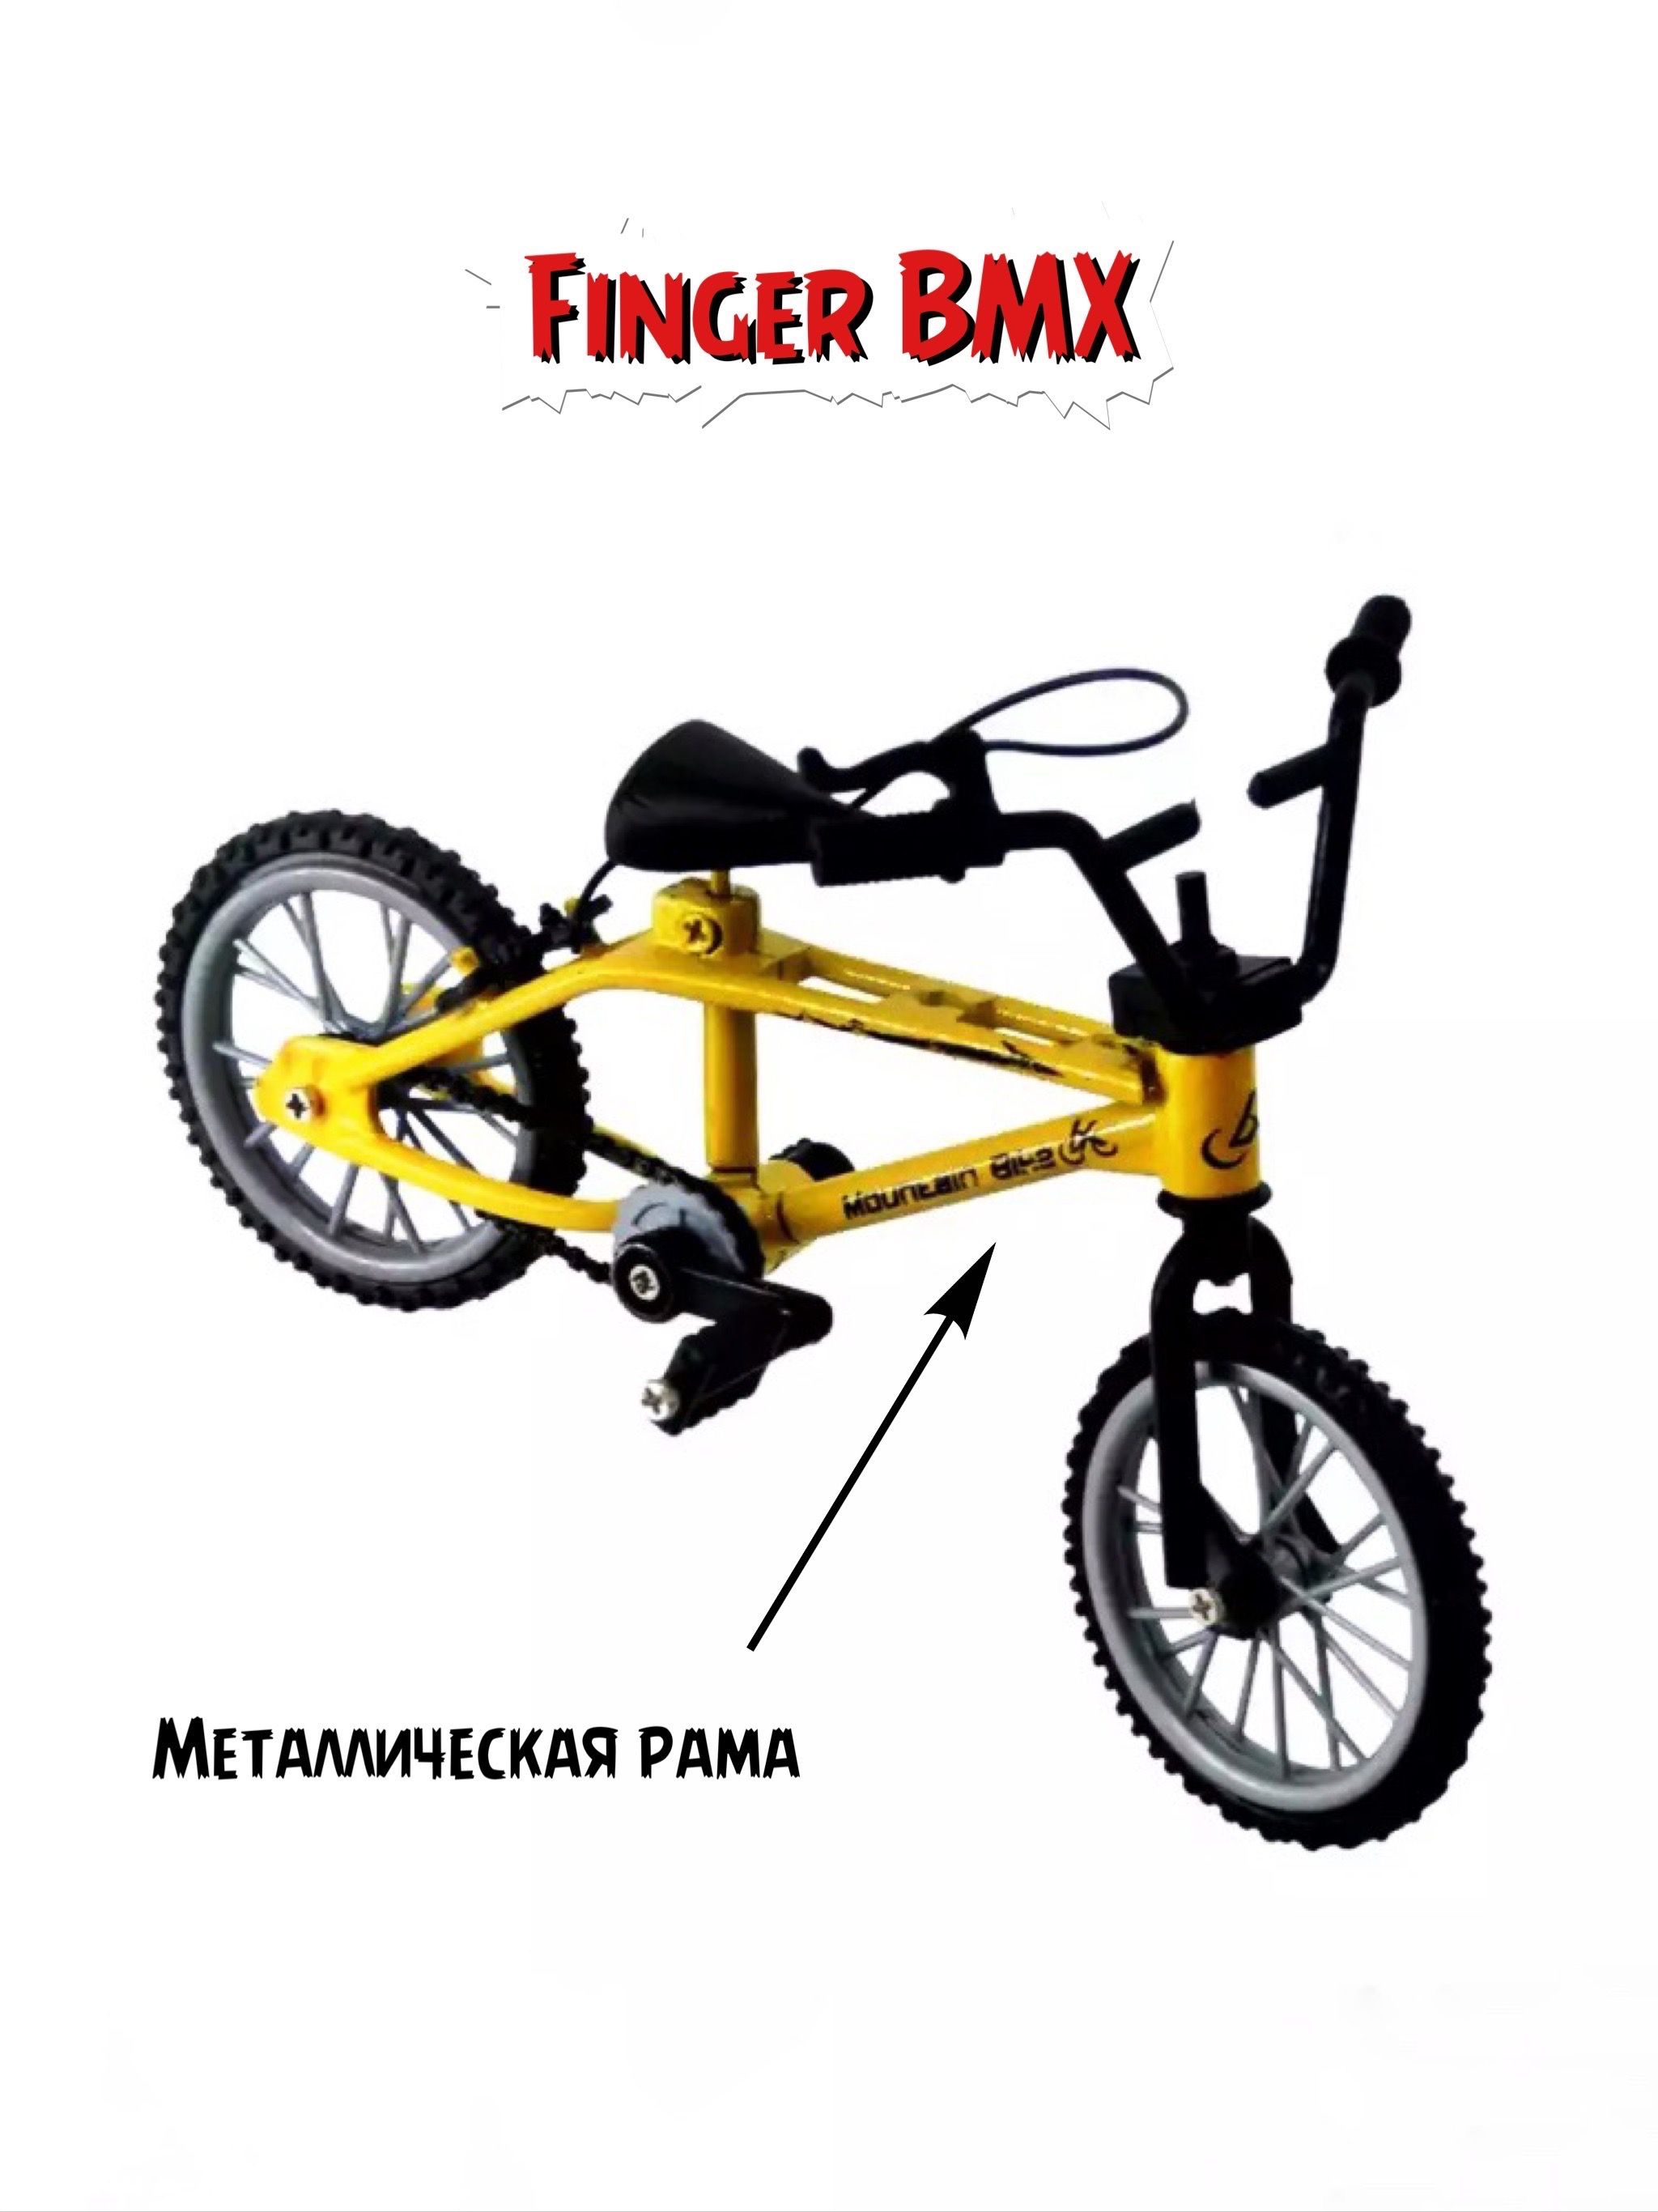 Как делать трюки на фингер BMX